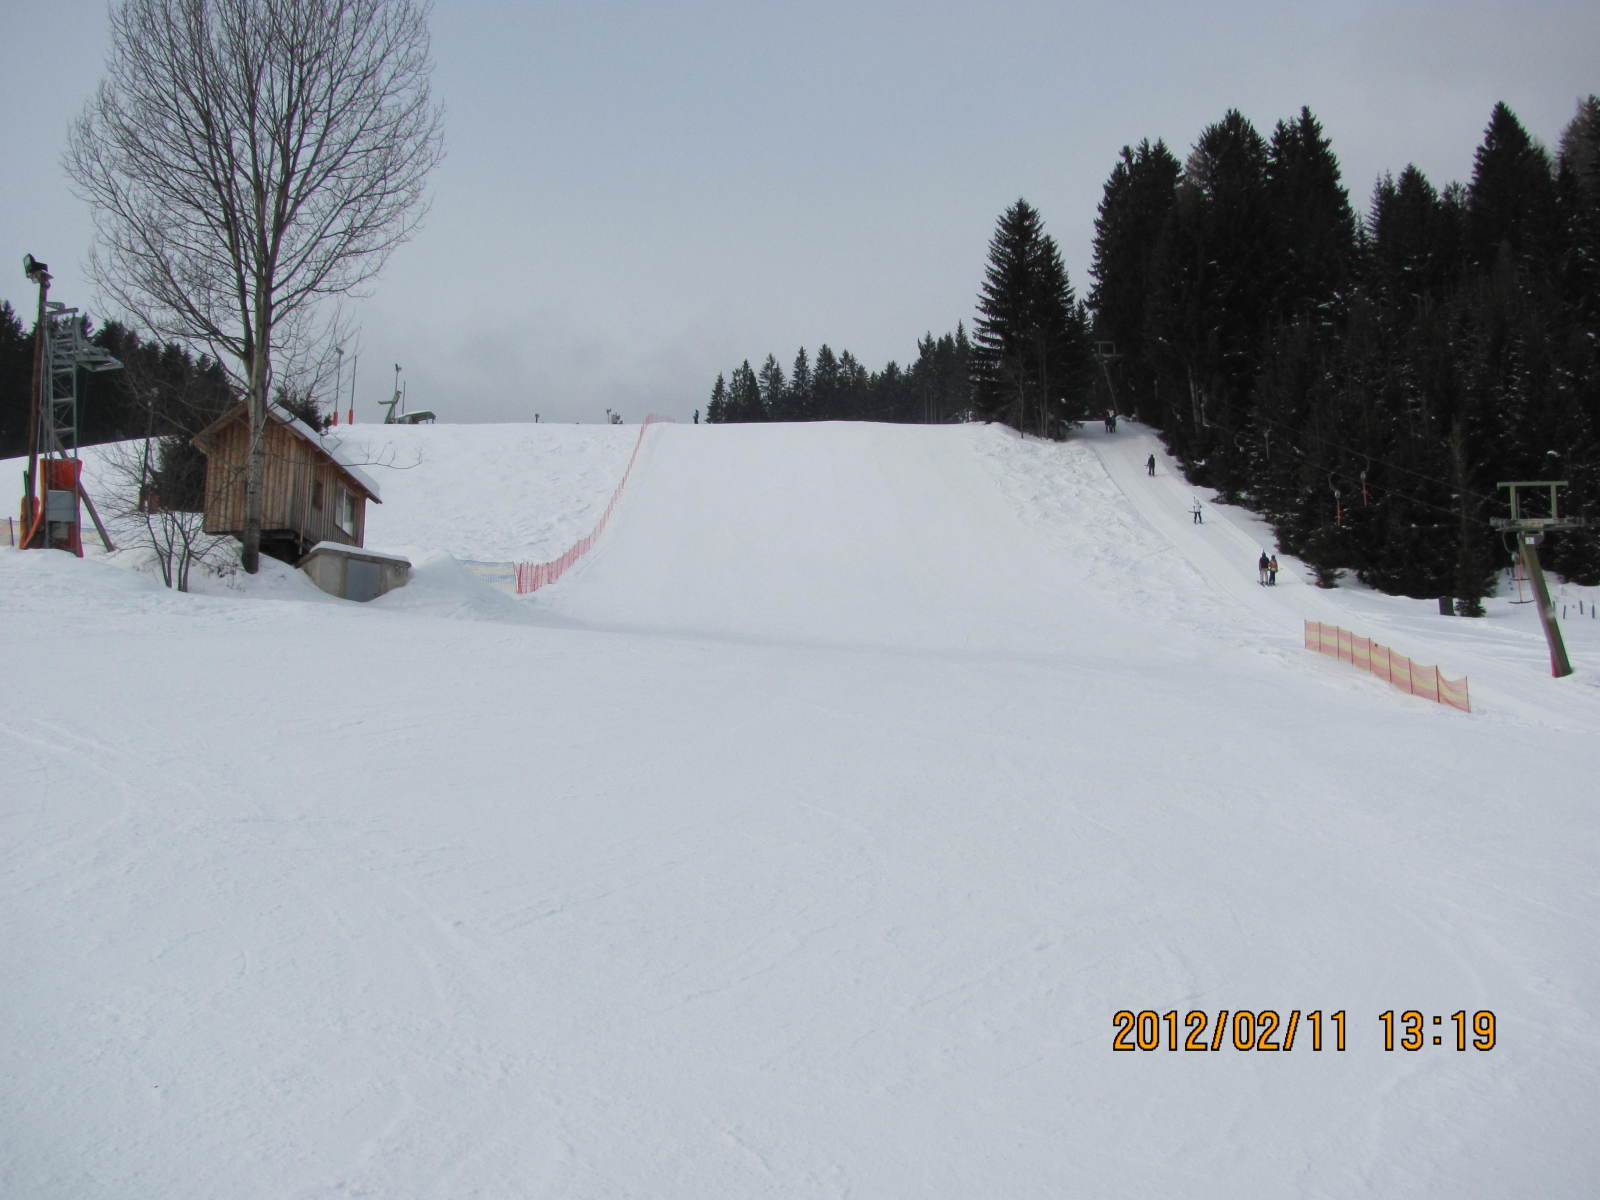 Snowboard pálya "meredek" szakasza, emellett van a funpark